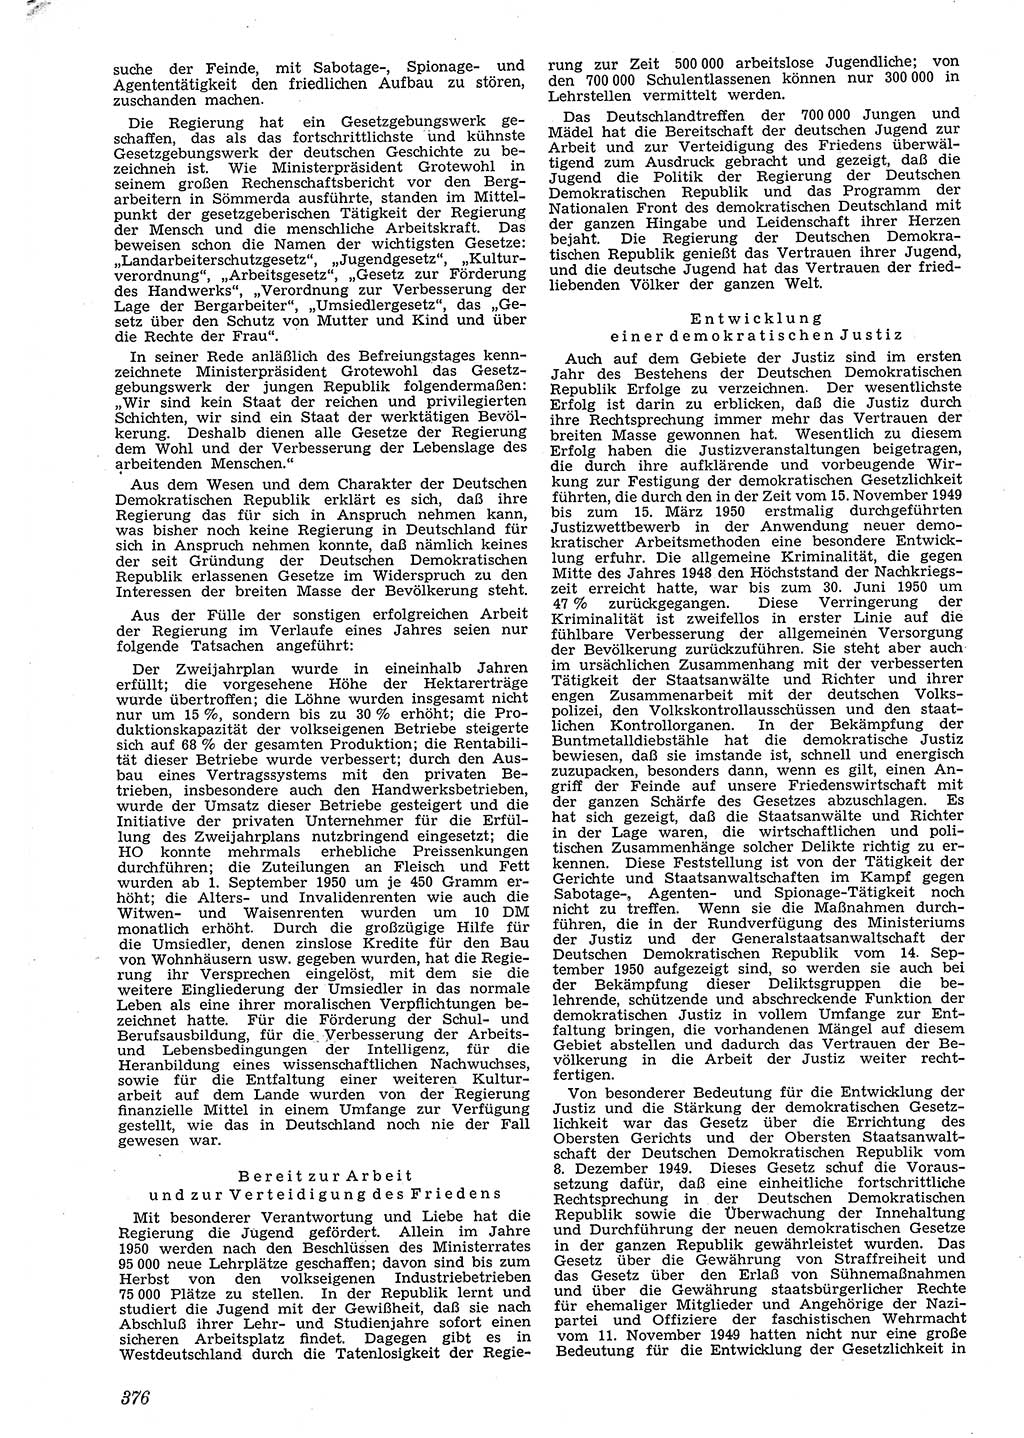 Neue Justiz (NJ), Zeitschrift für Recht und Rechtswissenschaft [Deutsche Demokratische Republik (DDR)], 4. Jahrgang 1950, Seite 376 (NJ DDR 1950, S. 376)